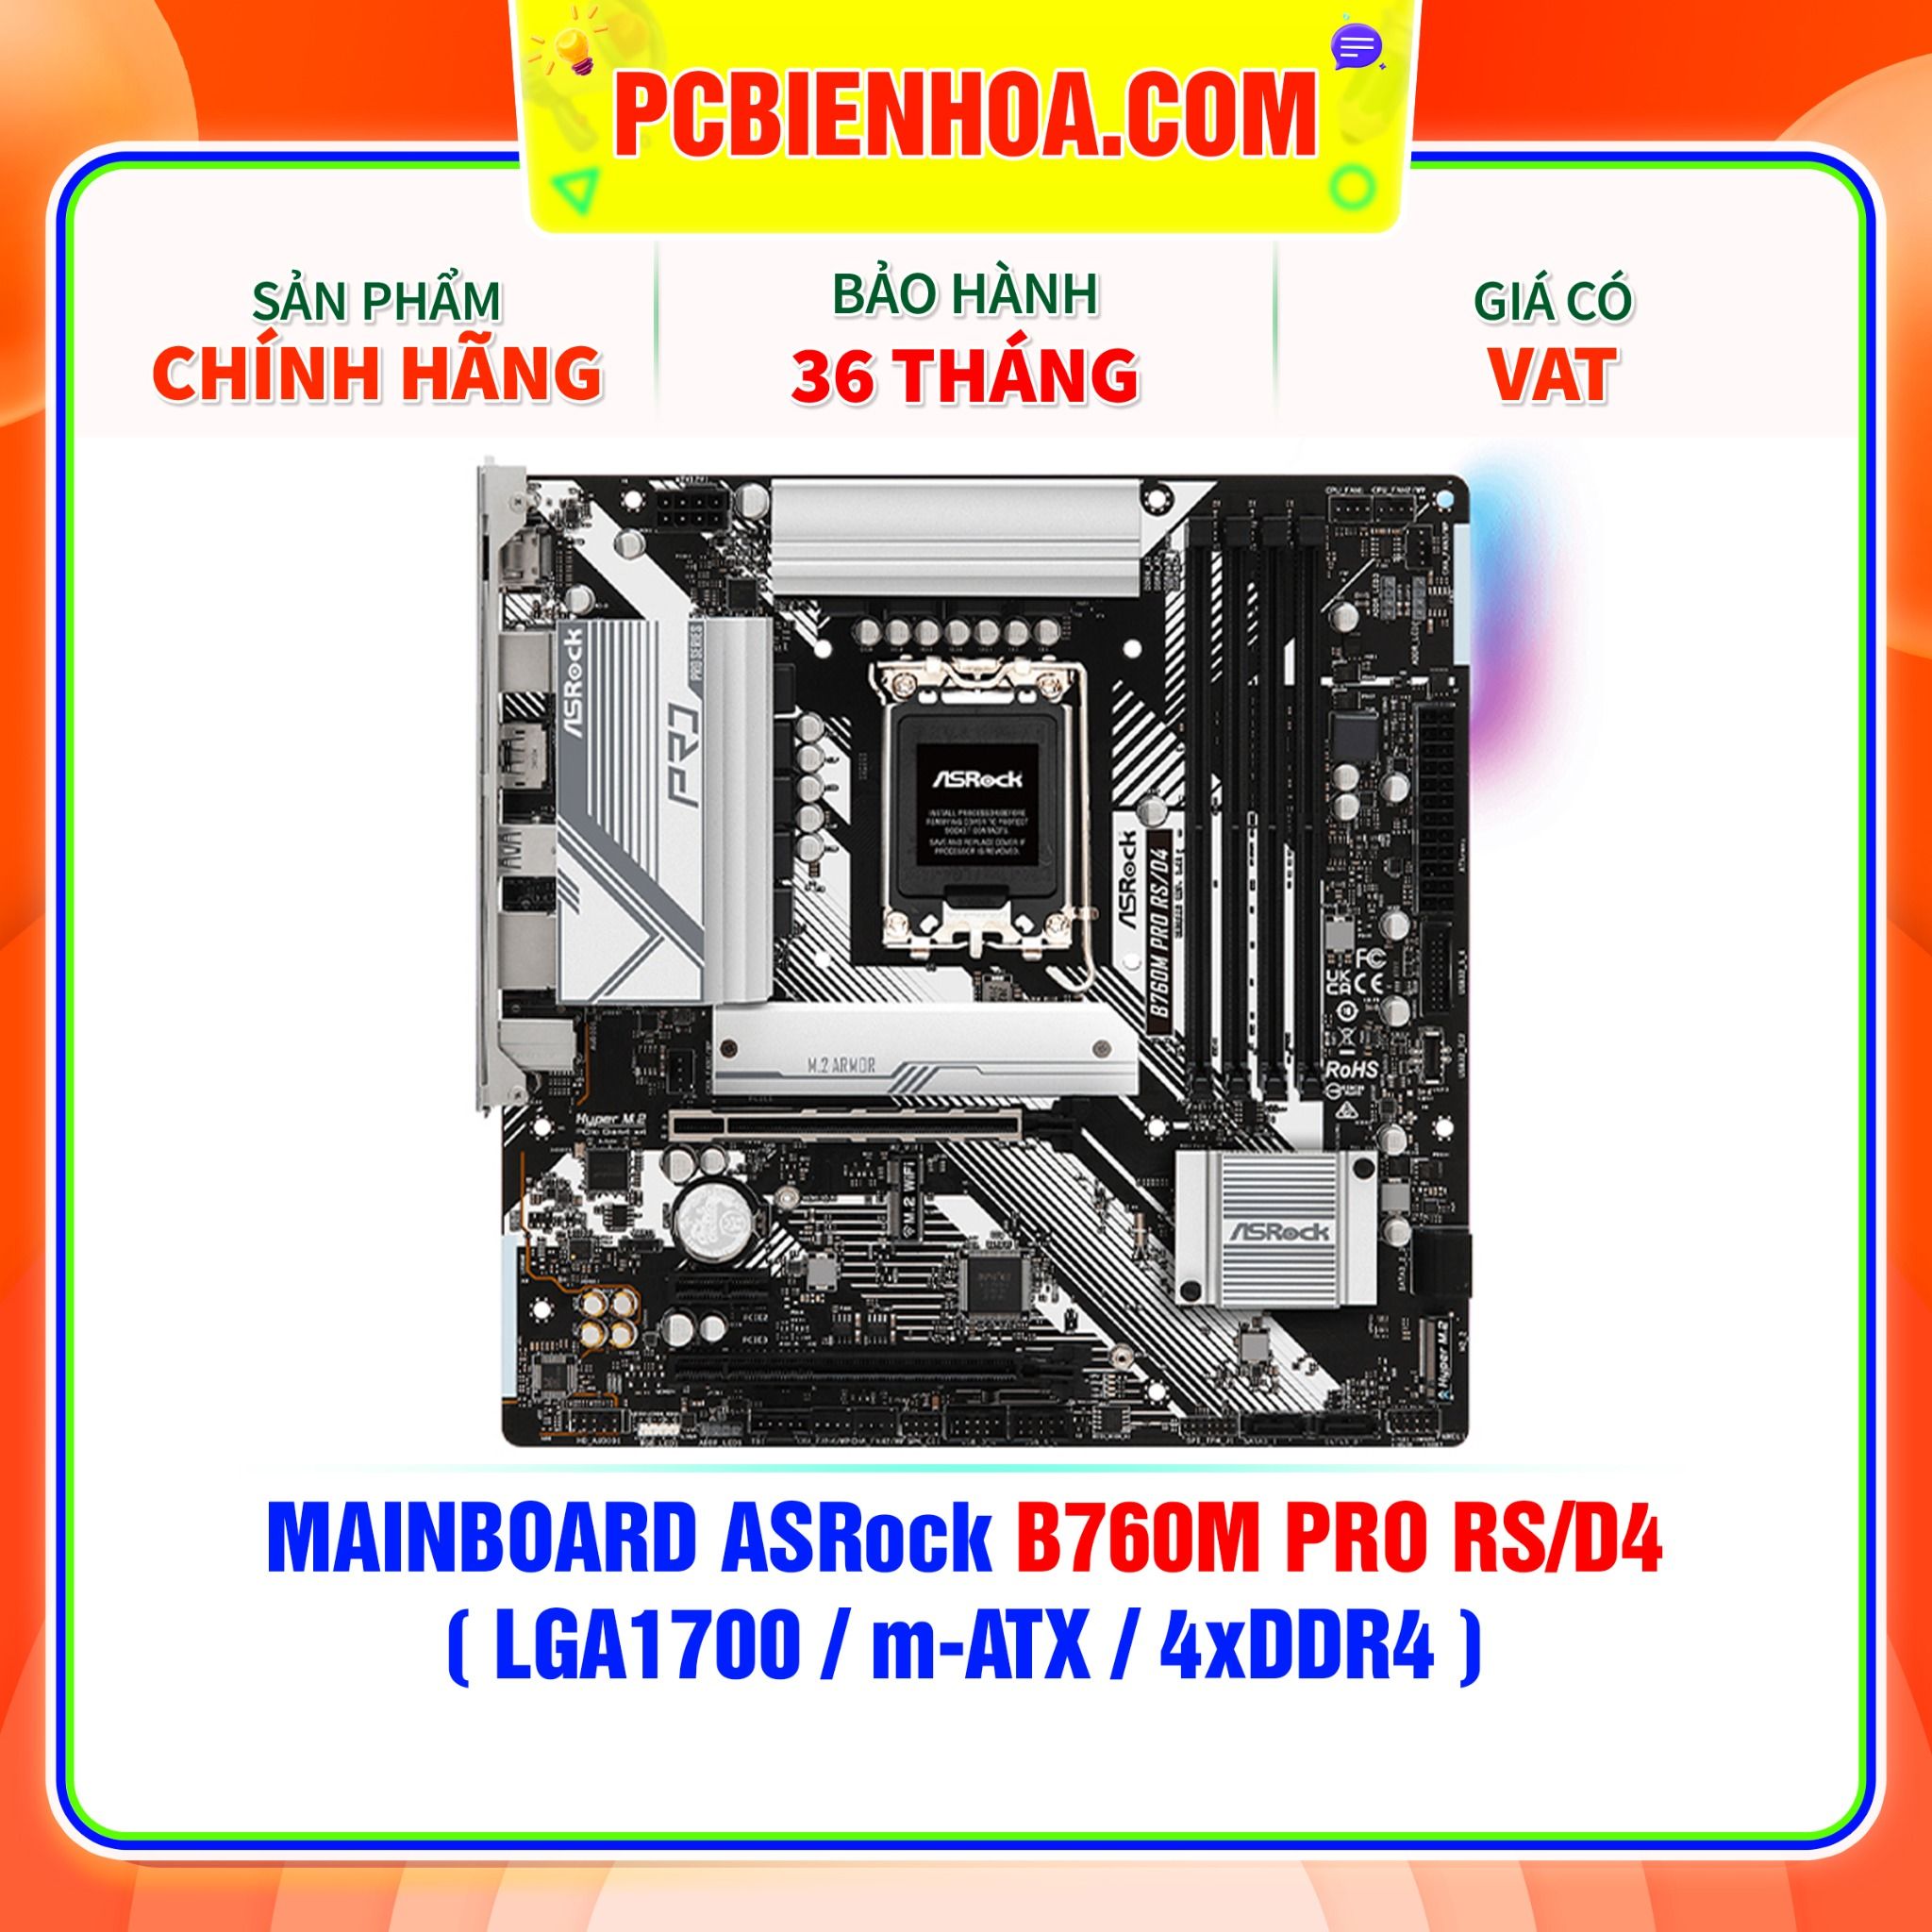  MAINBOARD ASRock B760M PRO RS/D4 ( LGA1700 / m-ATX / 4xDDR4 ) 